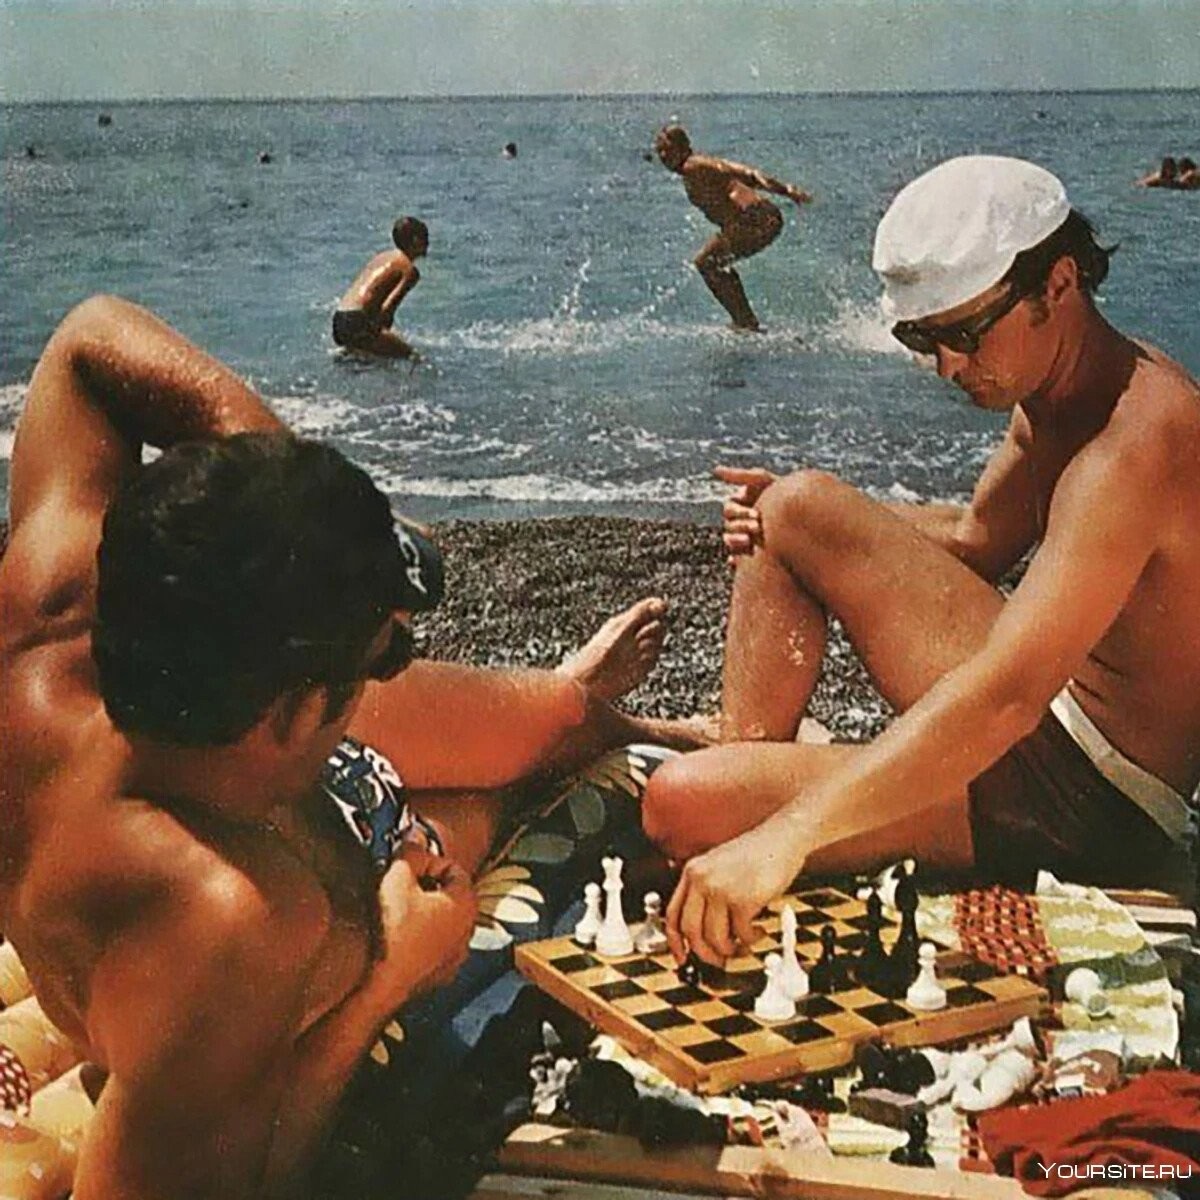 10 пляжных привычек из СССР. То, что сейчас кажется дикостью